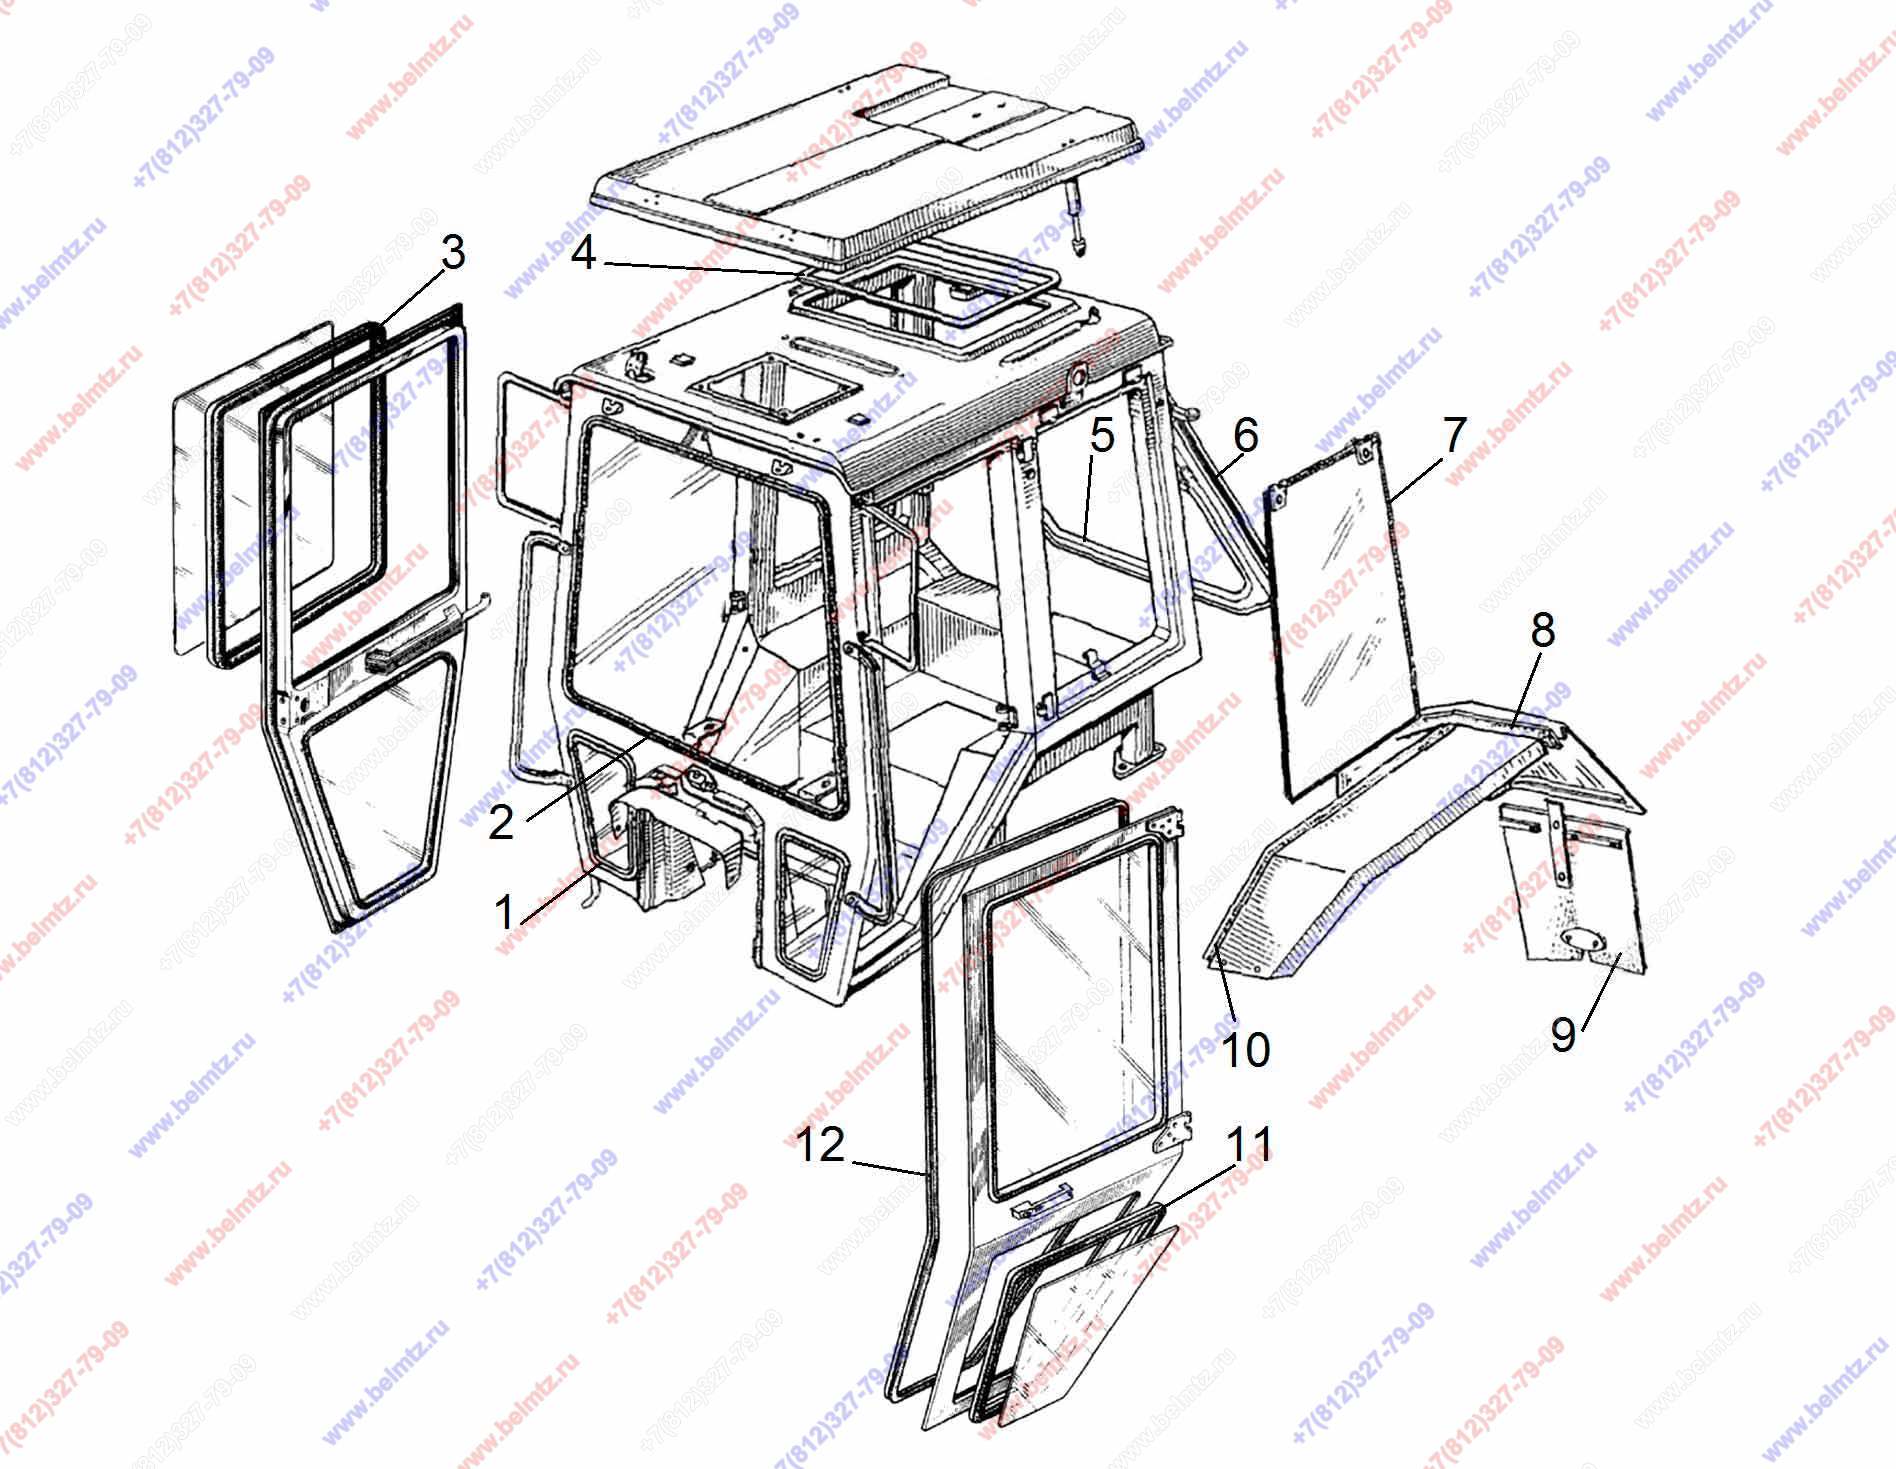 Кабины тракторов самодельные – самодельная, 80, 82, как установить, чертеж, устройство, ремонт малой, переделка